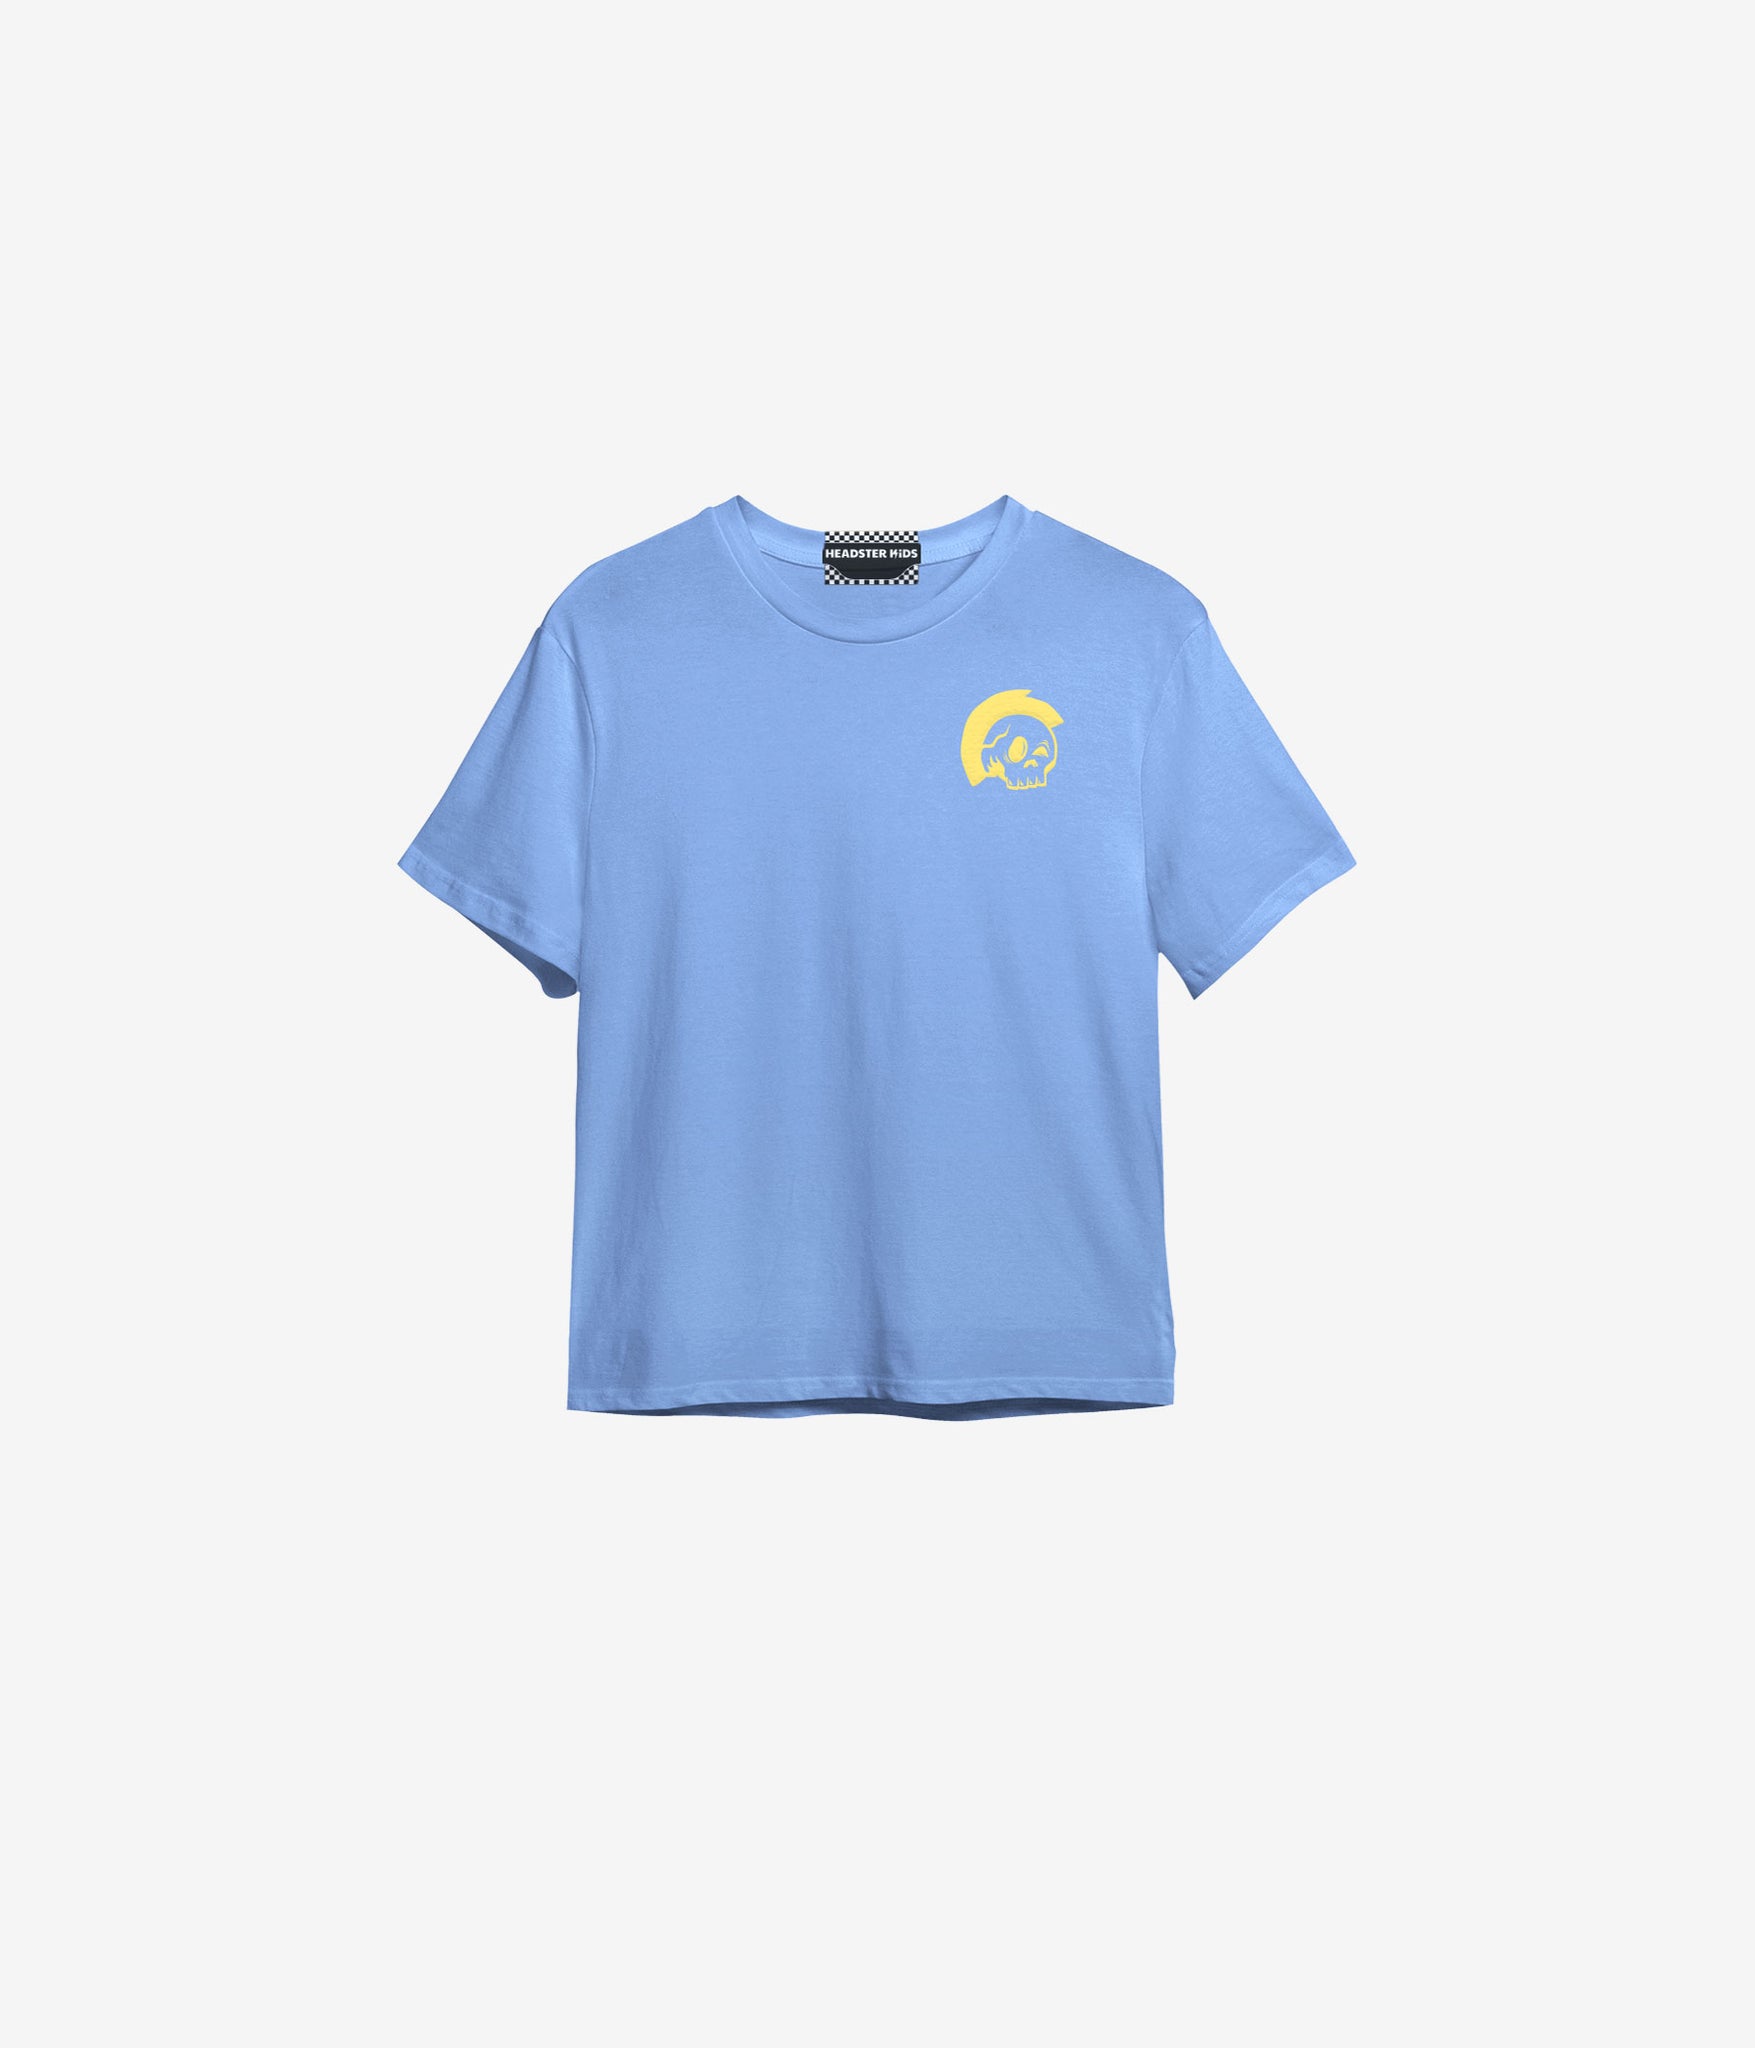 Mohawk T-shirt - Salty Blue